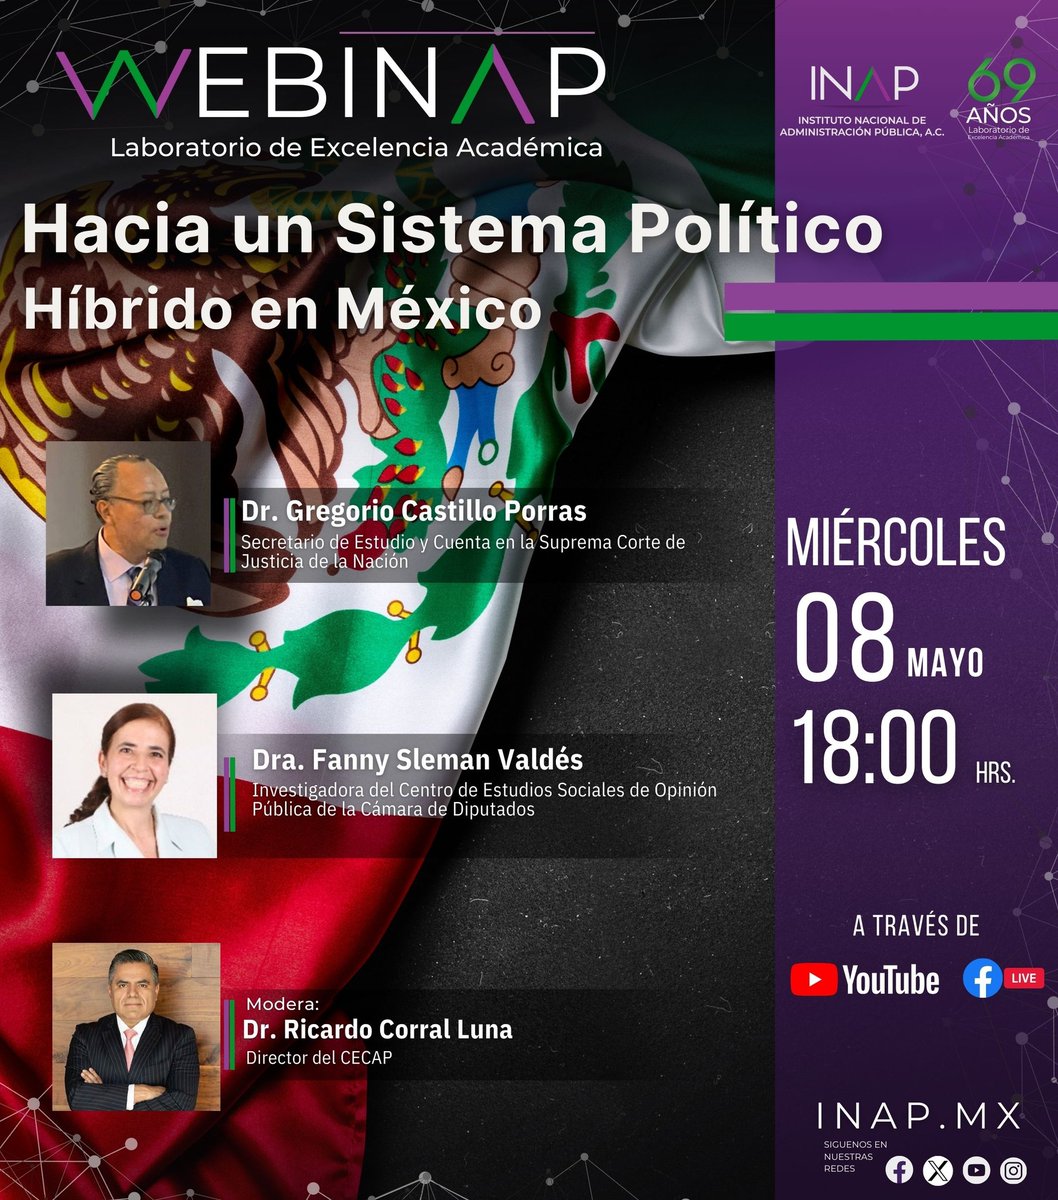 🗣️Te esperamos mañana a nuestro WebINAP, hablaremos de #SistemaPolitico Híbrido en México ⏰06:00 pm 🔴 #EnVivo por Facebook y Youtube